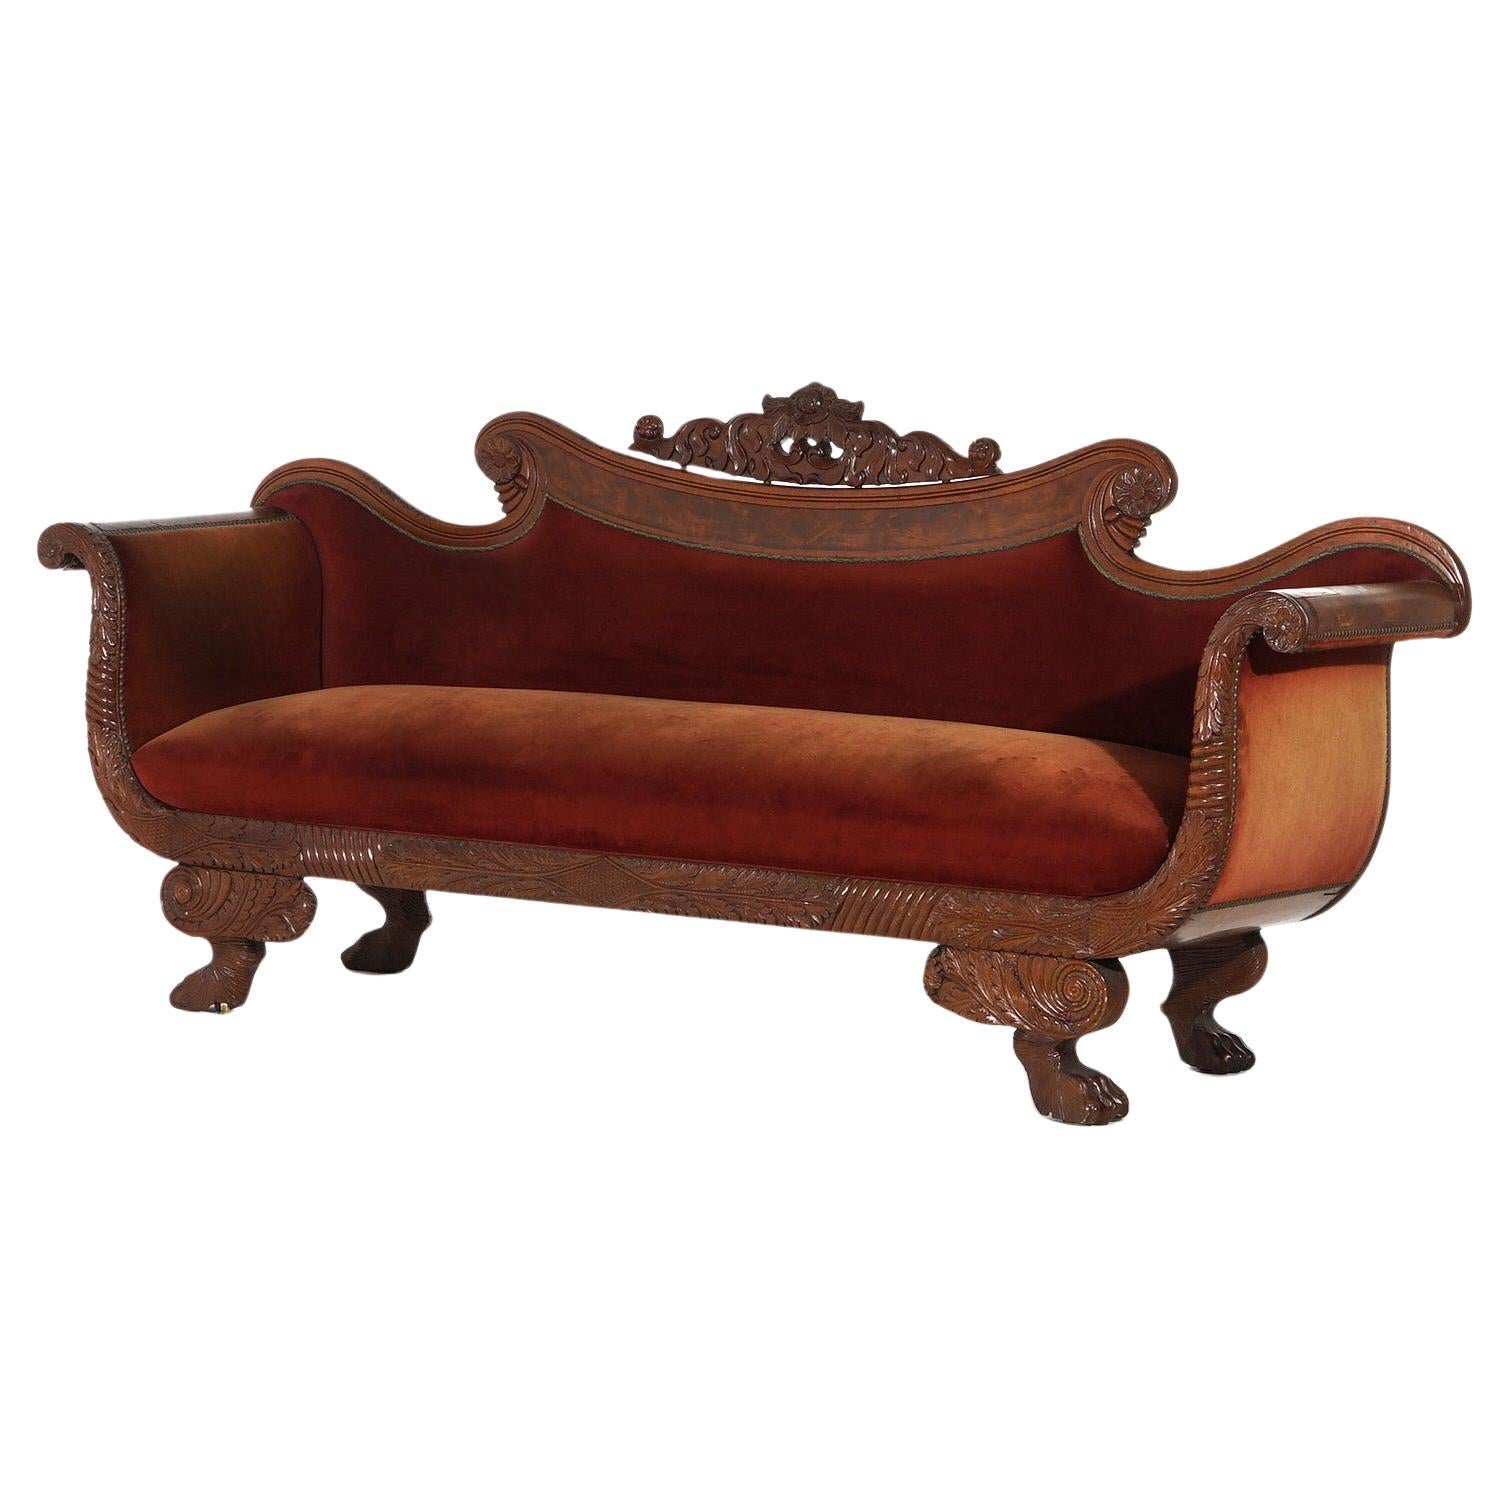 Antikes neoklassizistisches amerikanisches Empire-Sofa aus geschnitztem Nussbaum und Wurzelholz, um 1840